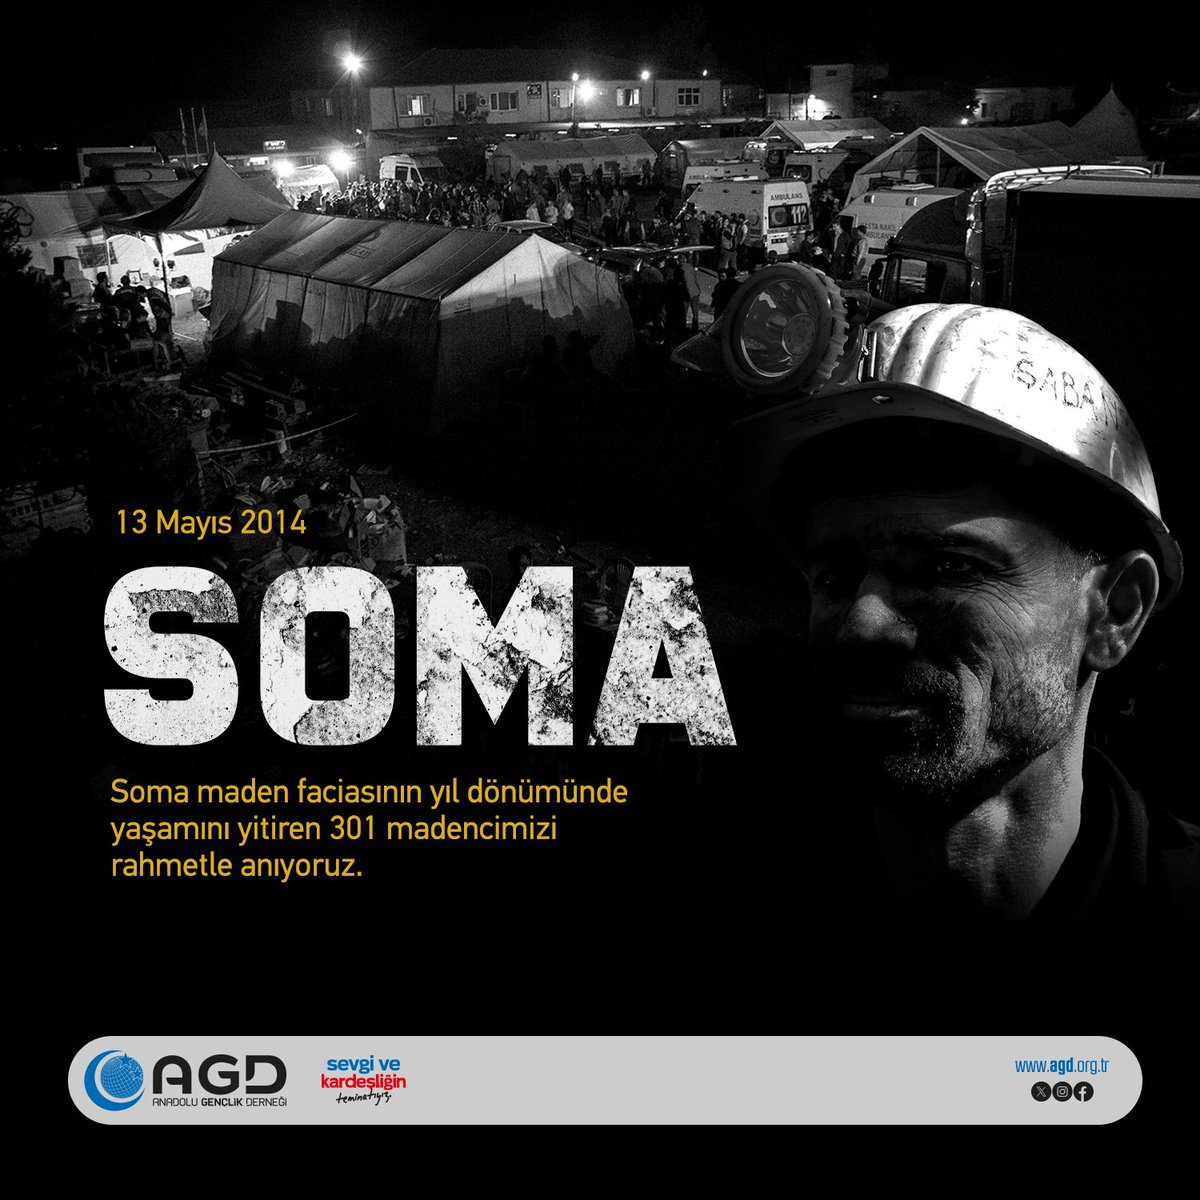 'Bir avuç kömür için bir ömür verenlere...” #Soma maden faciasının yıl dönümünde yaşamını yitiren 301 madencimizi rahmetle anıyoruz.